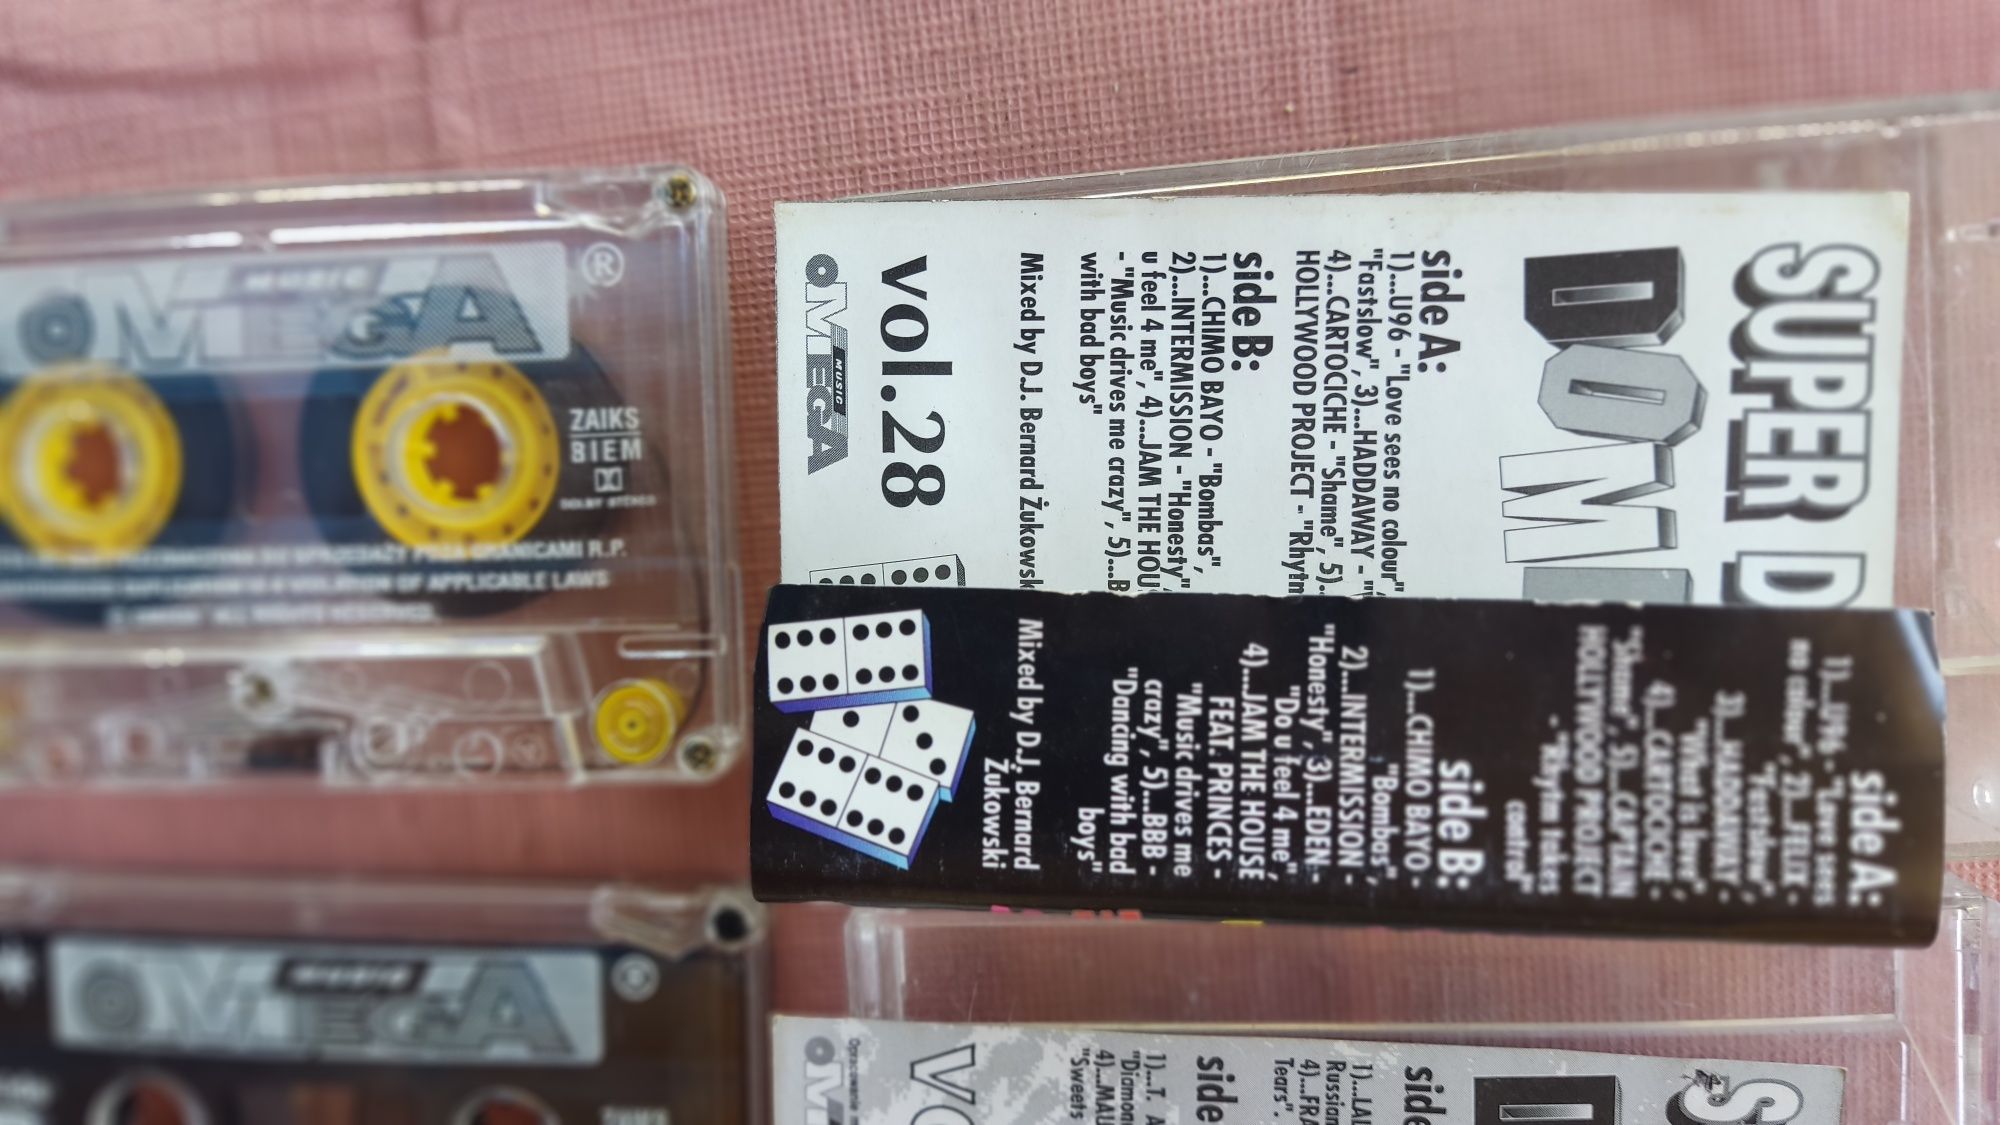 Omega Super Disco Domino 1 i 28 kaseta